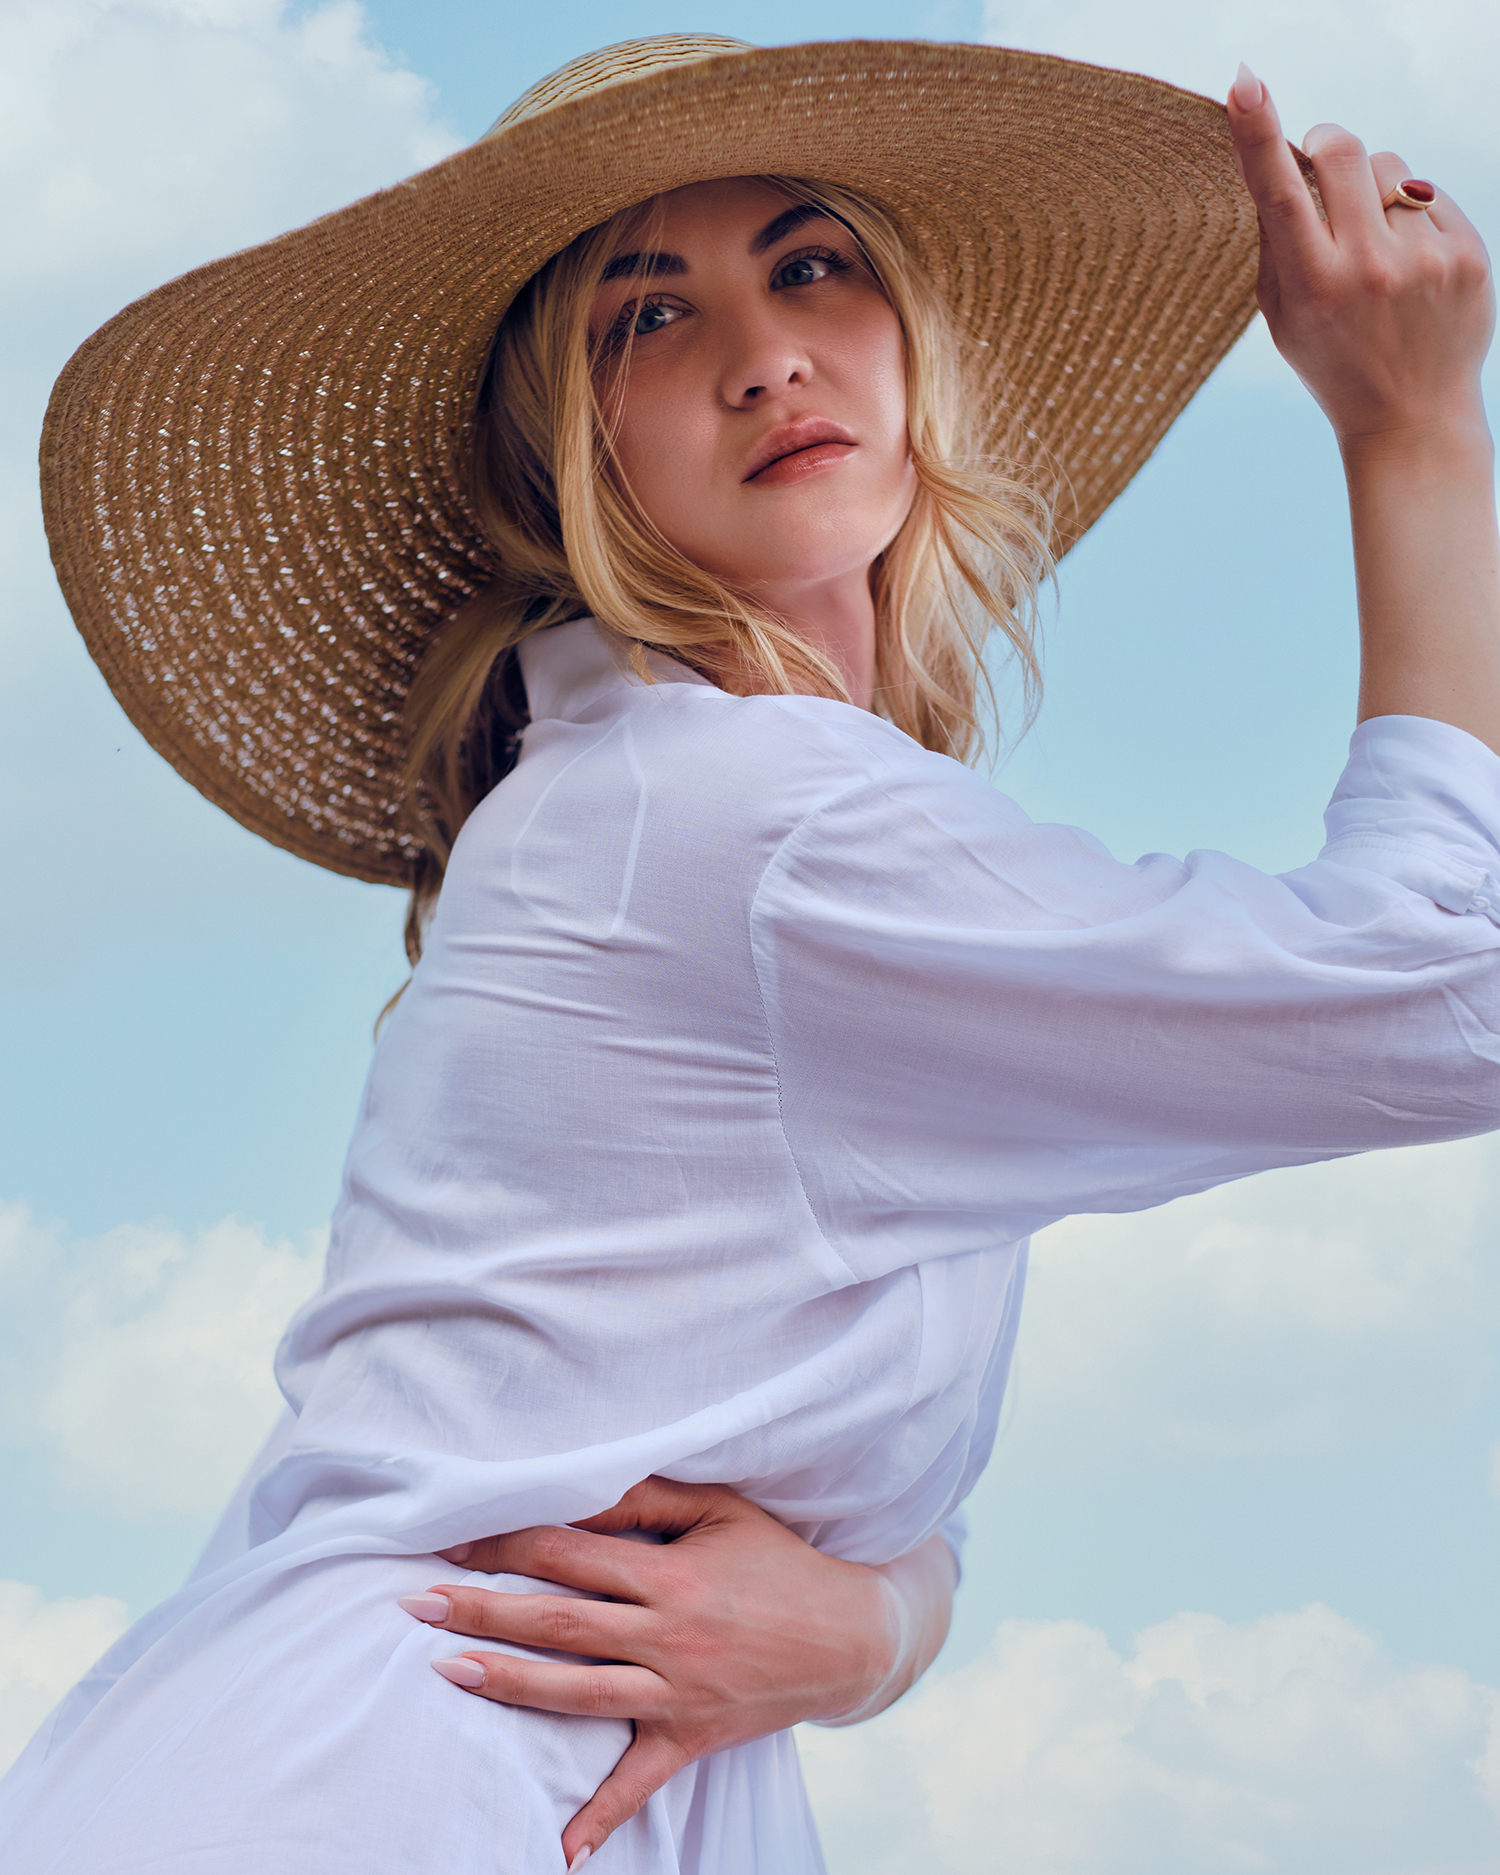 girl wearing white shirt and beach hat